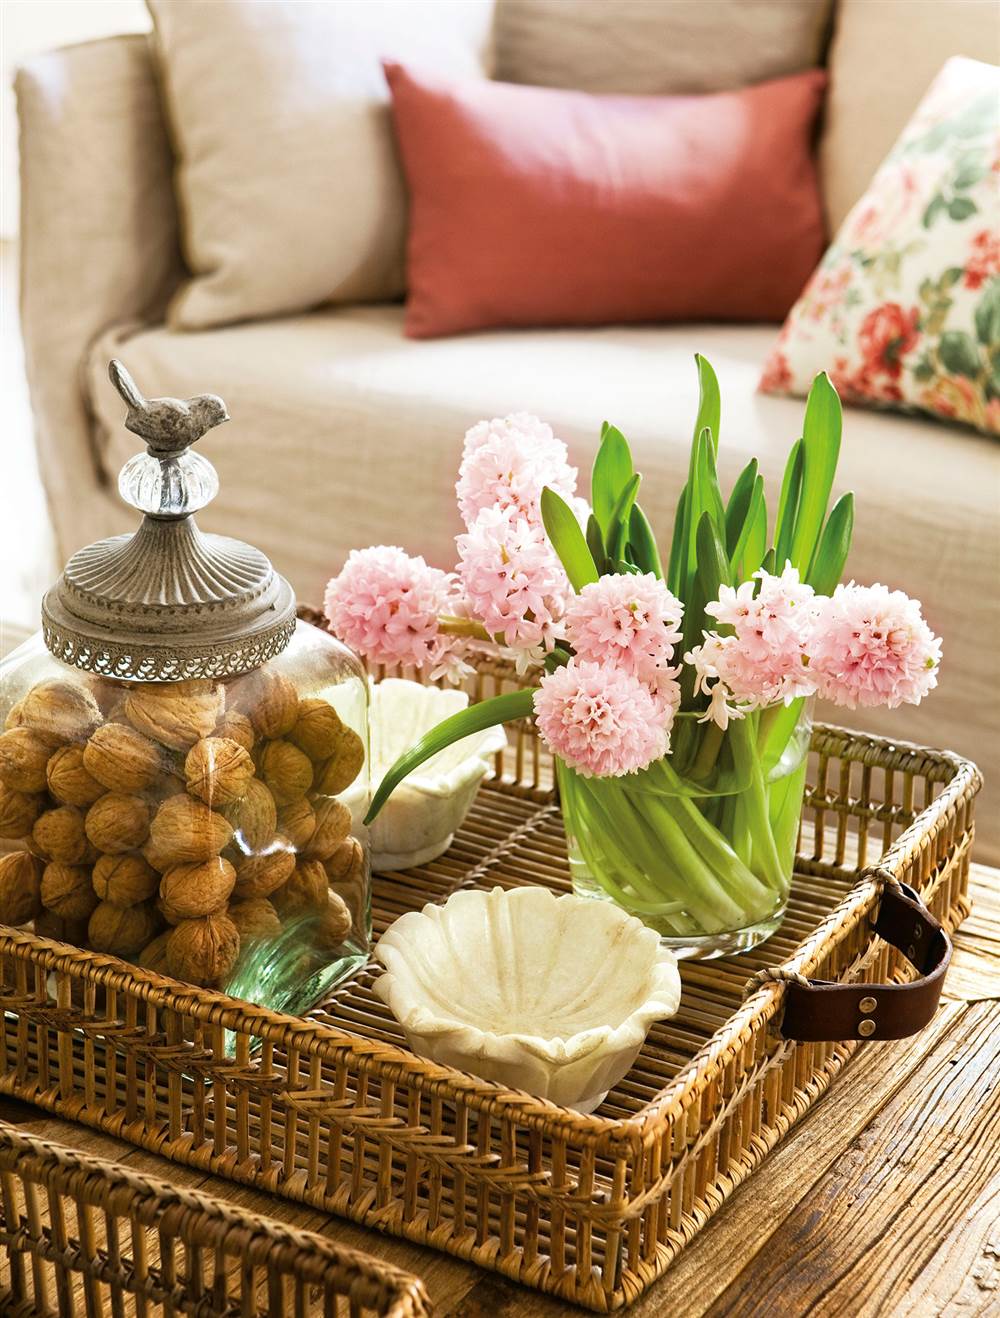 Detalle de mesa de centro con bandeja de fibras con objetos decorativos y flores